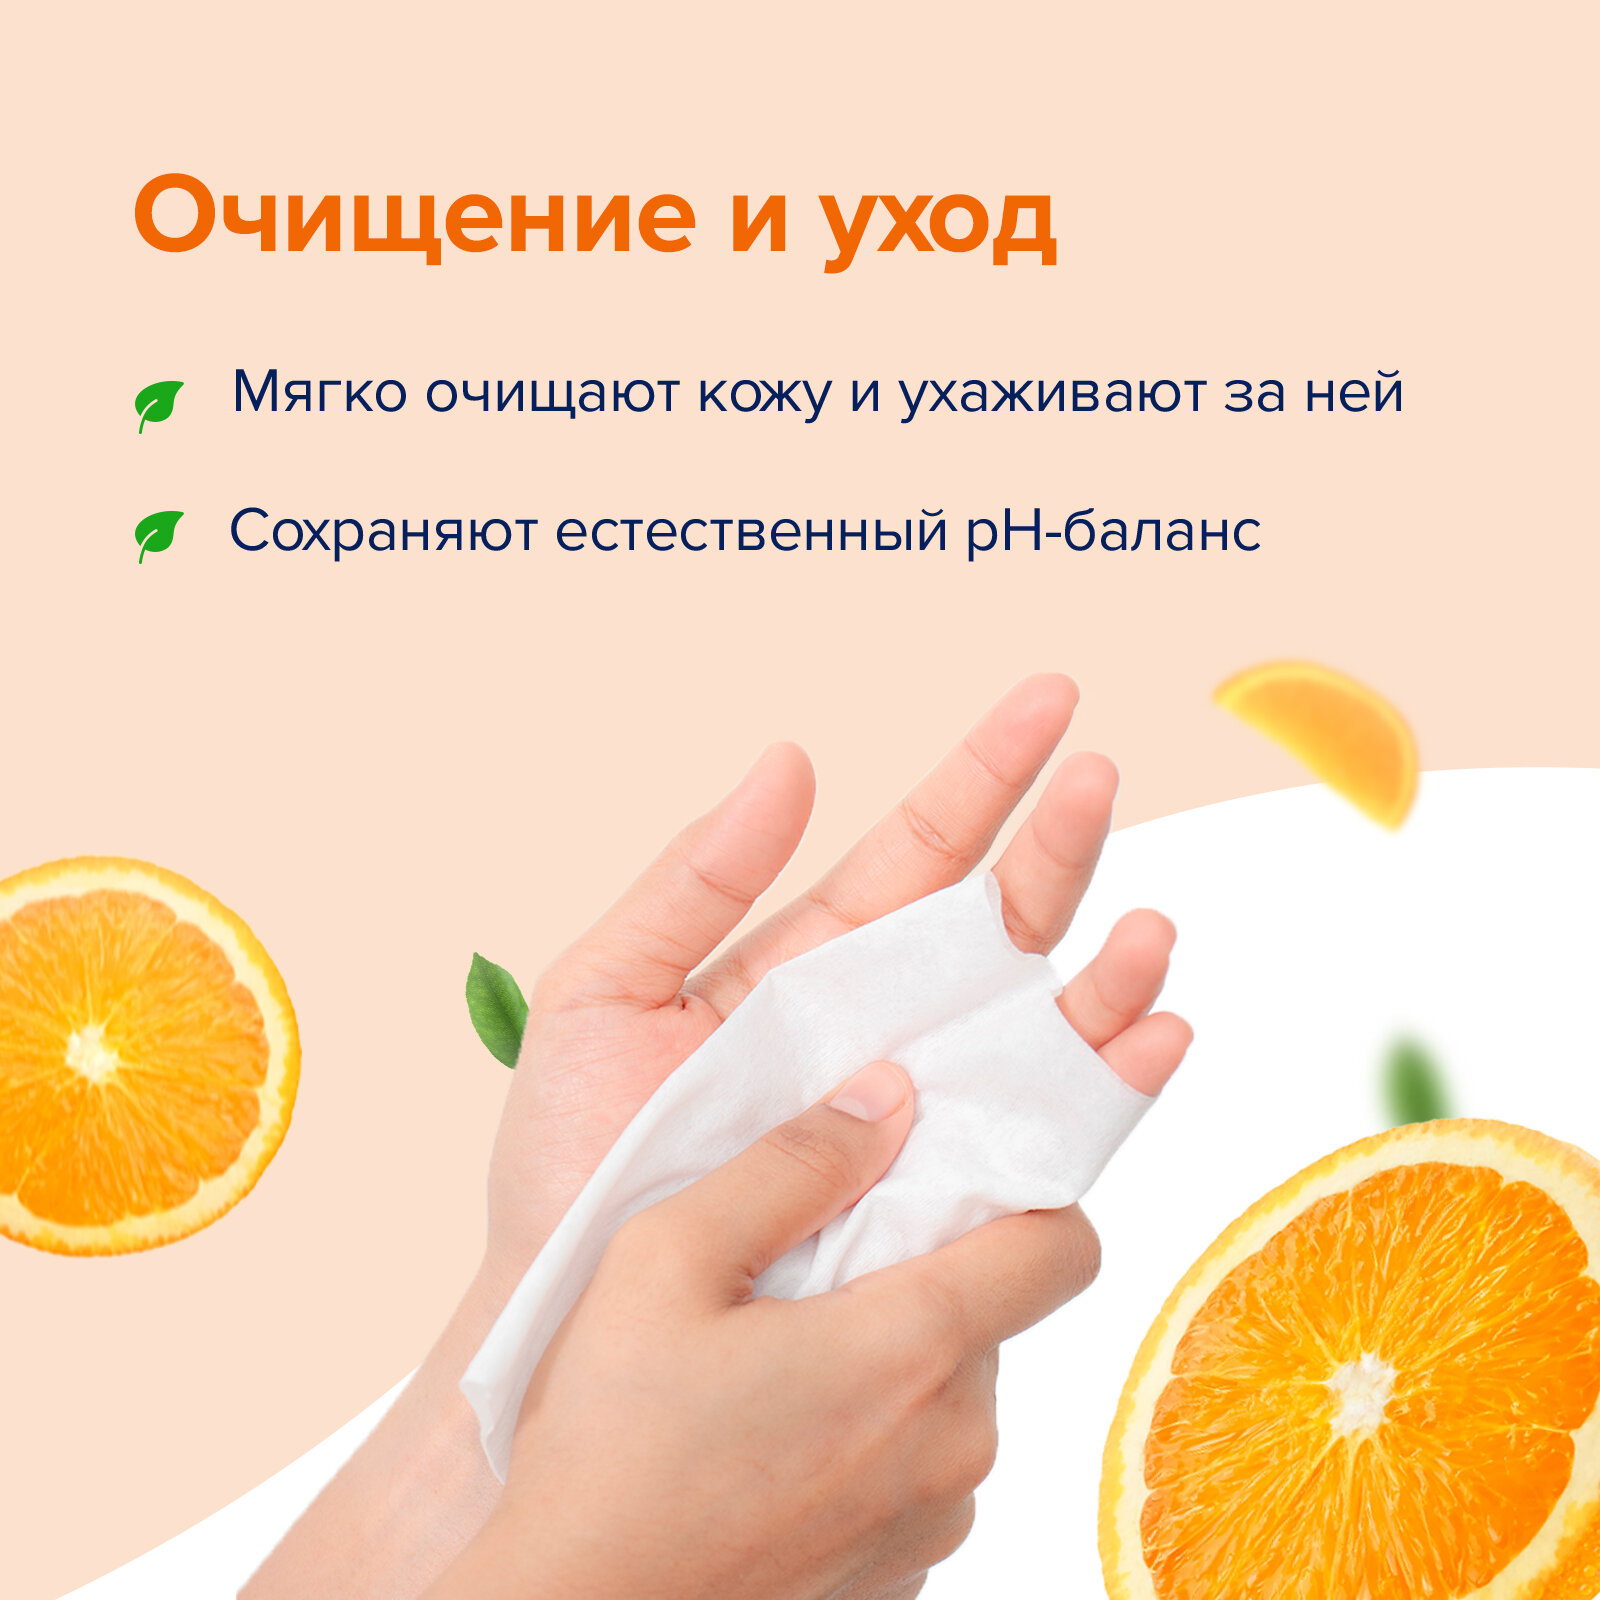 Влажные салфетки Biocos Spa Energy с экстрактом апельсина, средство для личной гигиены рук, набор 60 штук